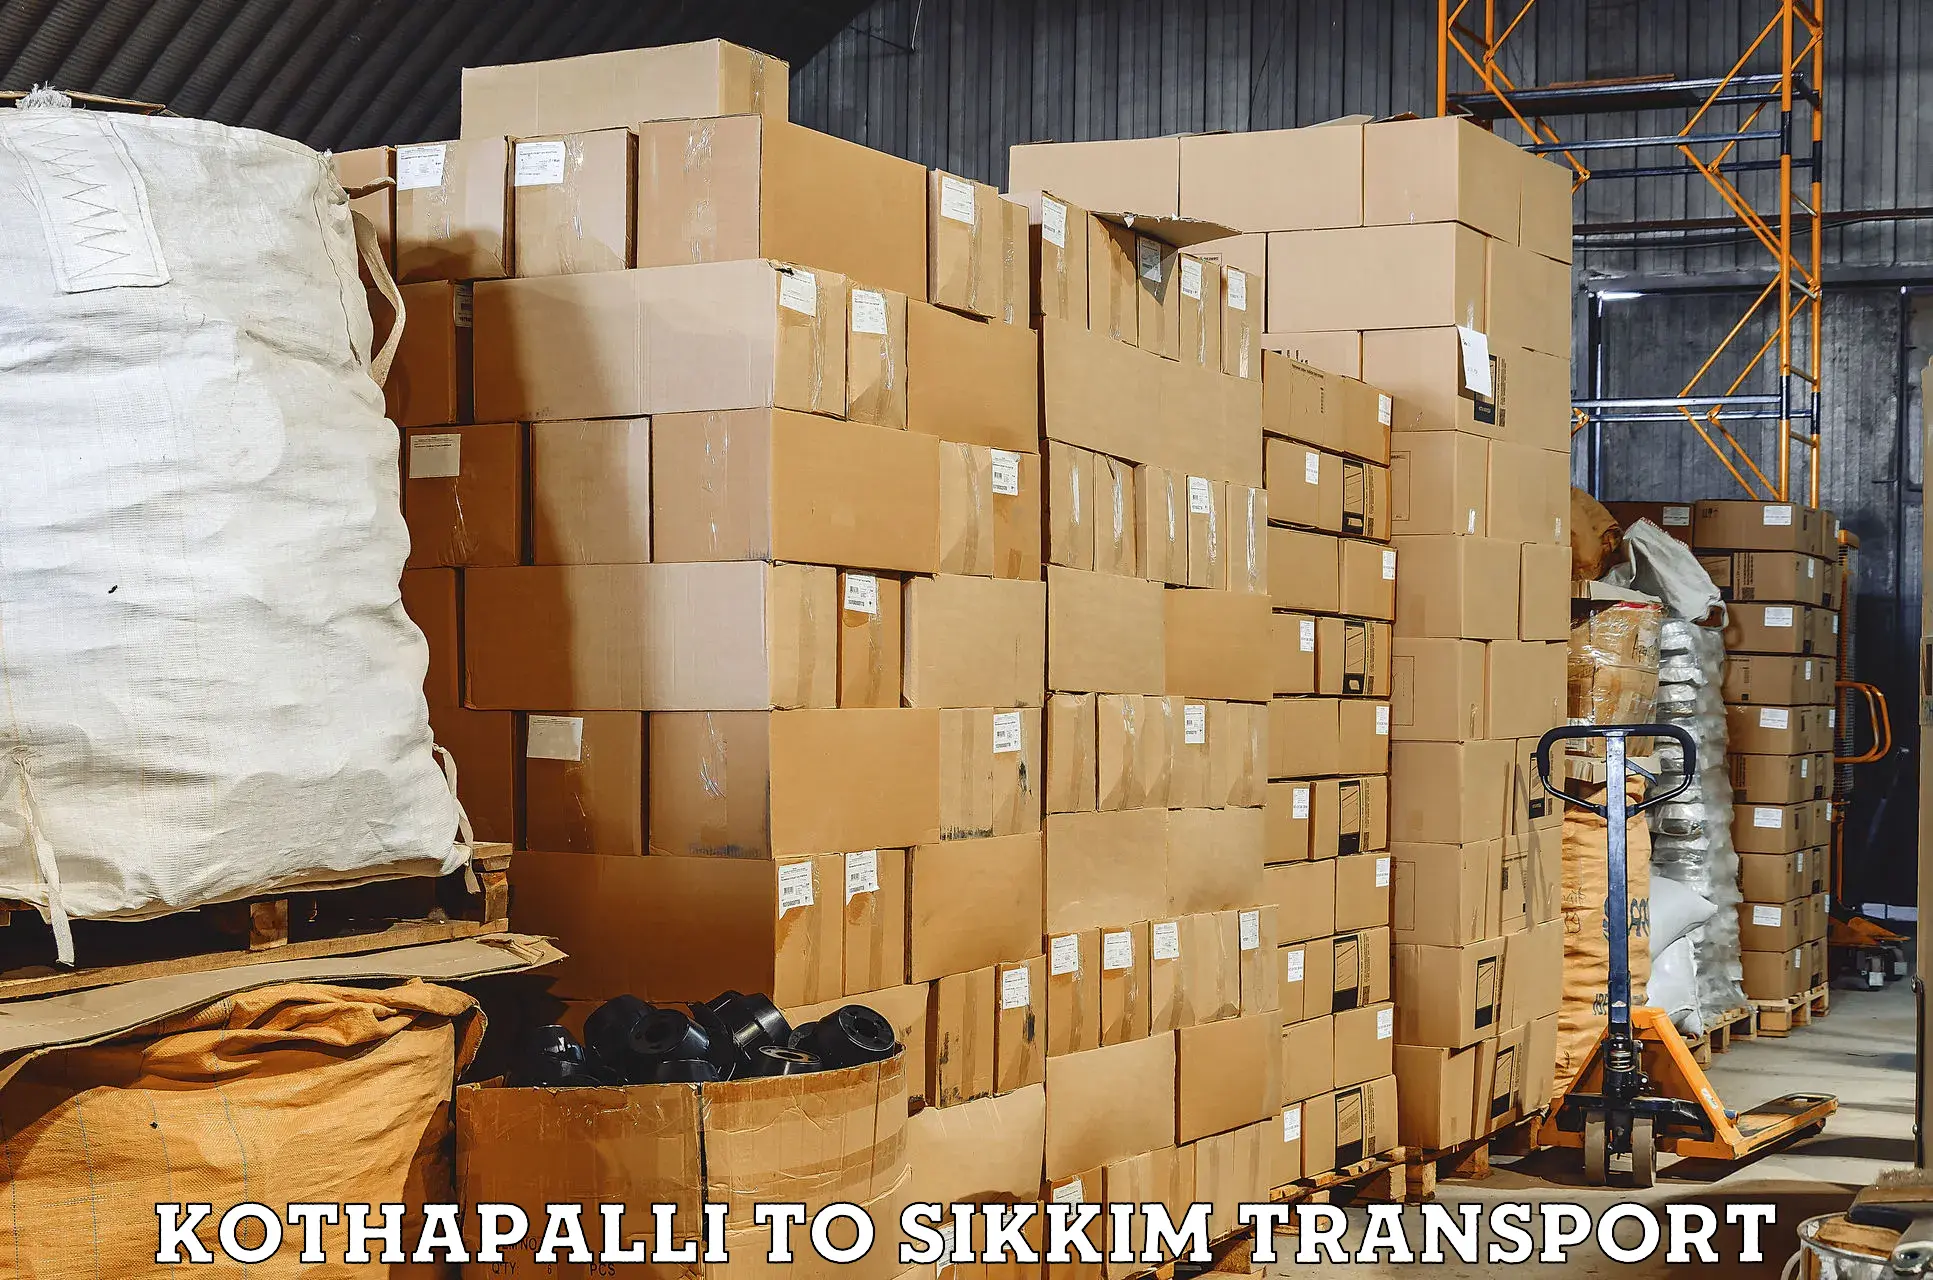 Furniture transport service Kothapalli to Geyzing